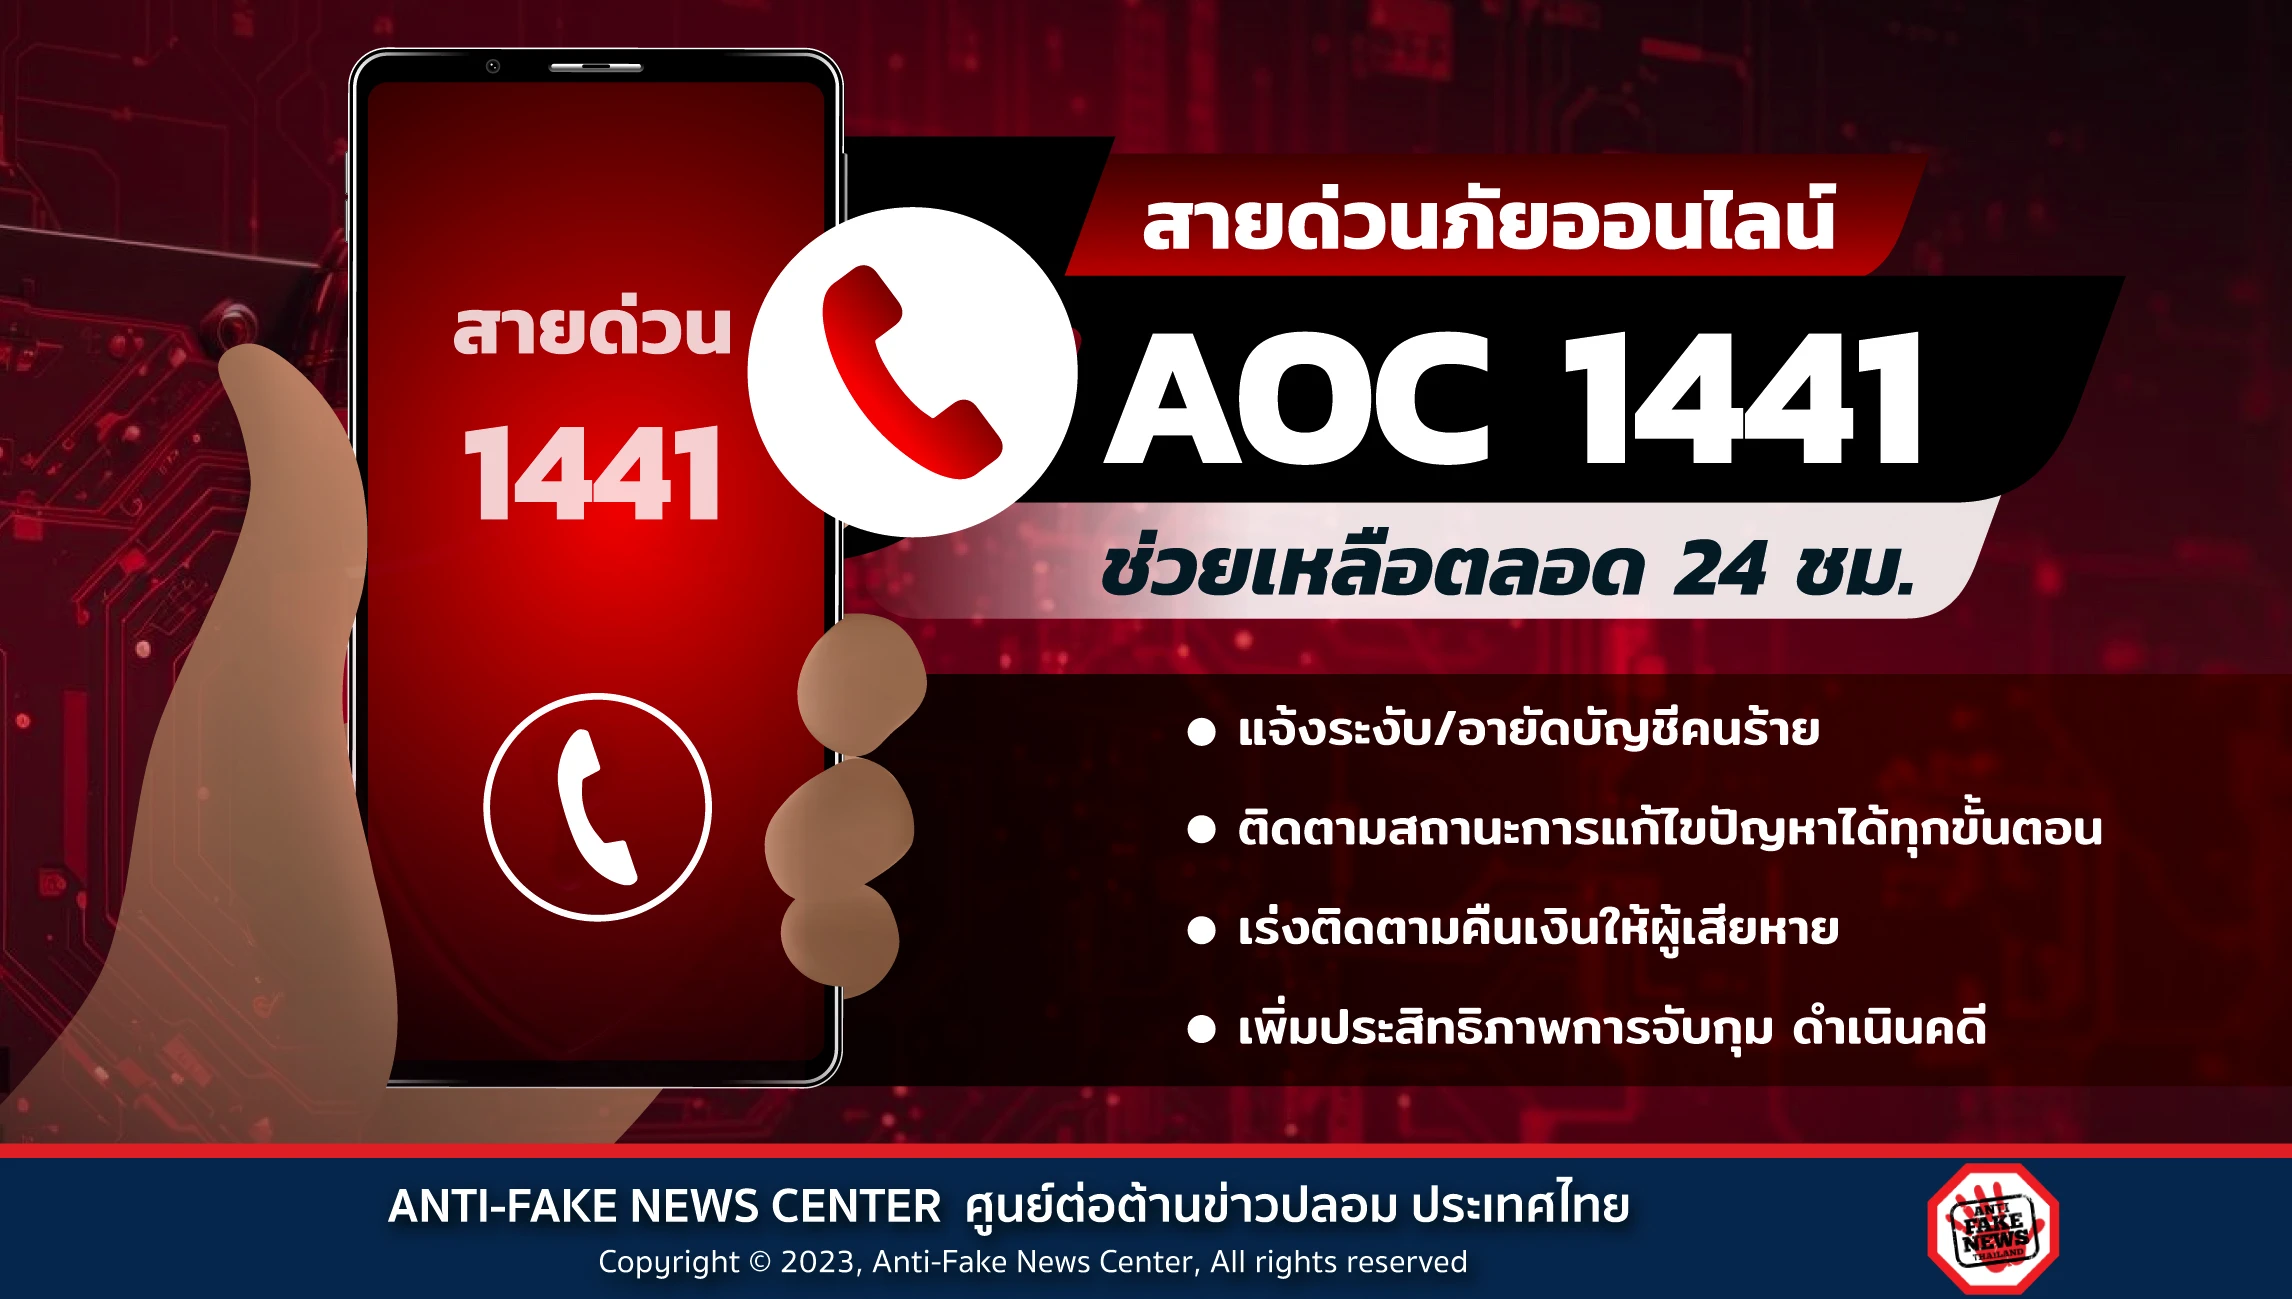 สายด่วนภัยออนไลน์ AOC 1441 ช่วยเหลือตลอด 24 ชม. > ศูนย์ต่อต้านข่าวปลอม